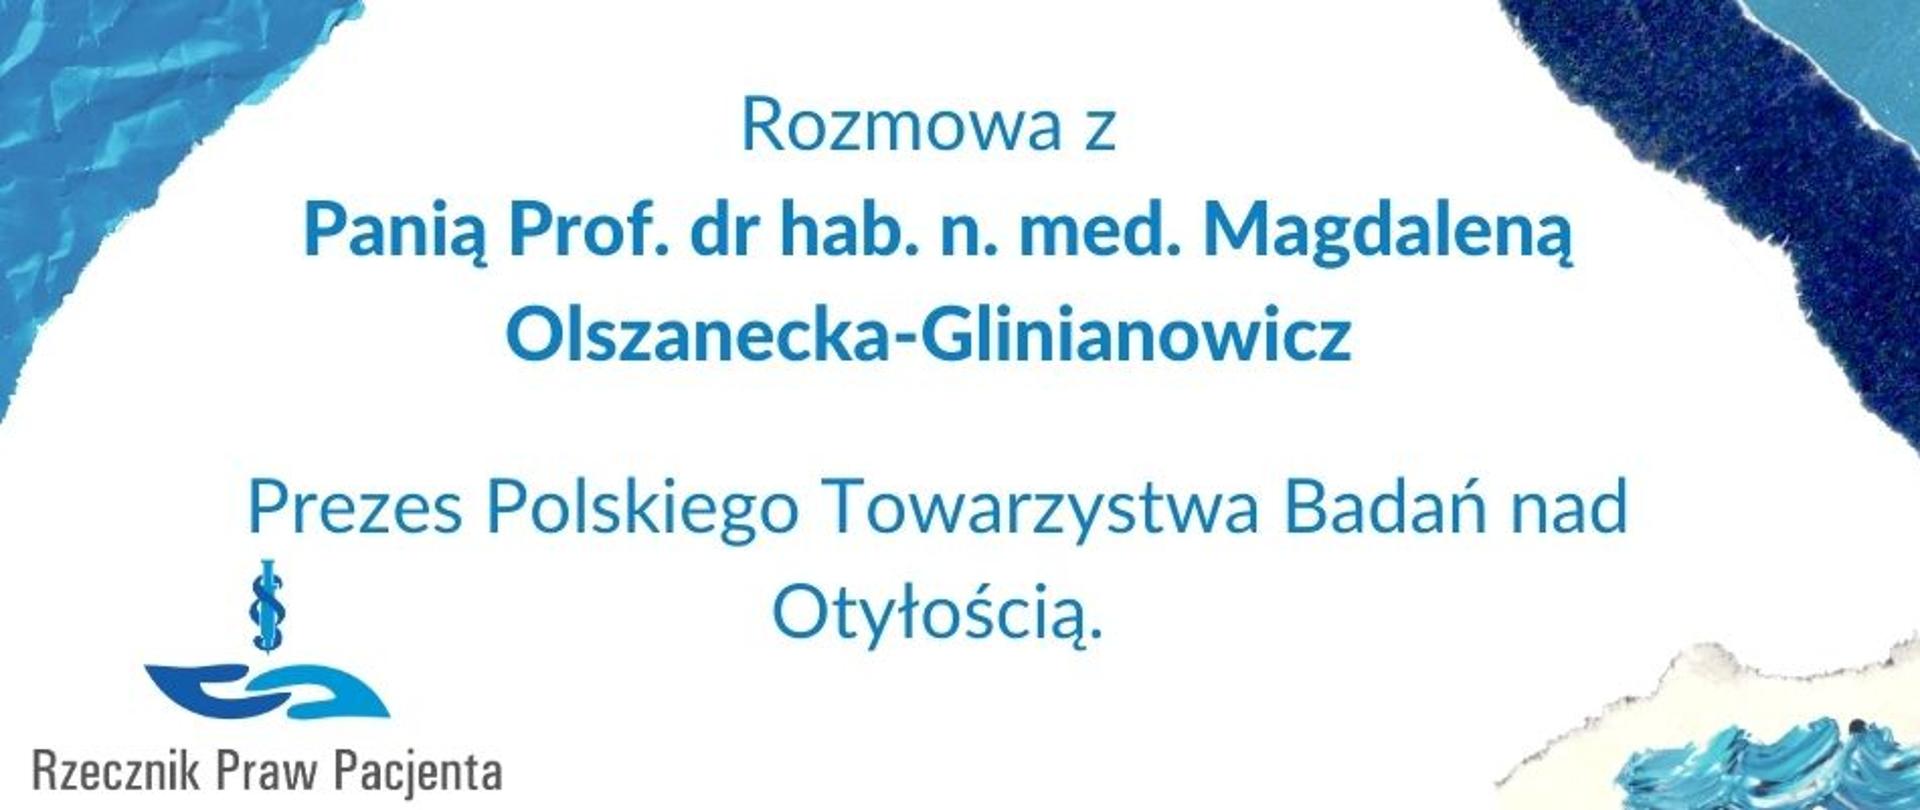 Rozmowy z Ekspertami - Magdalena Olszanecka-Glinianowicz